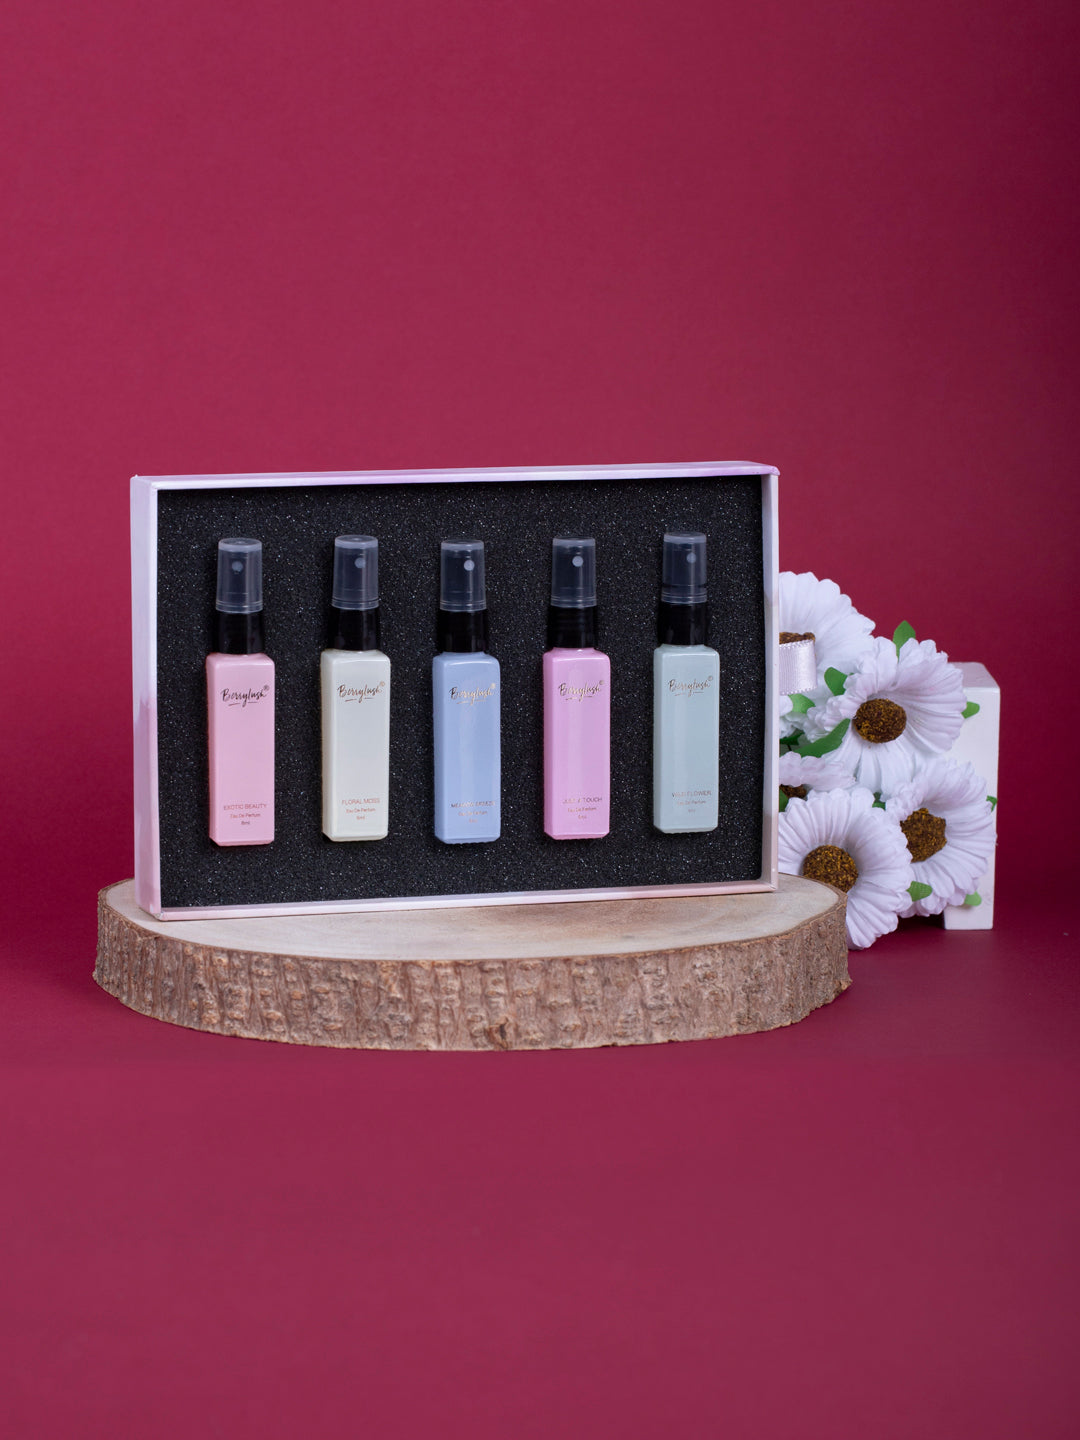 Berrylush Set Of 5 Long Lasting Perfumes- 8ml Each